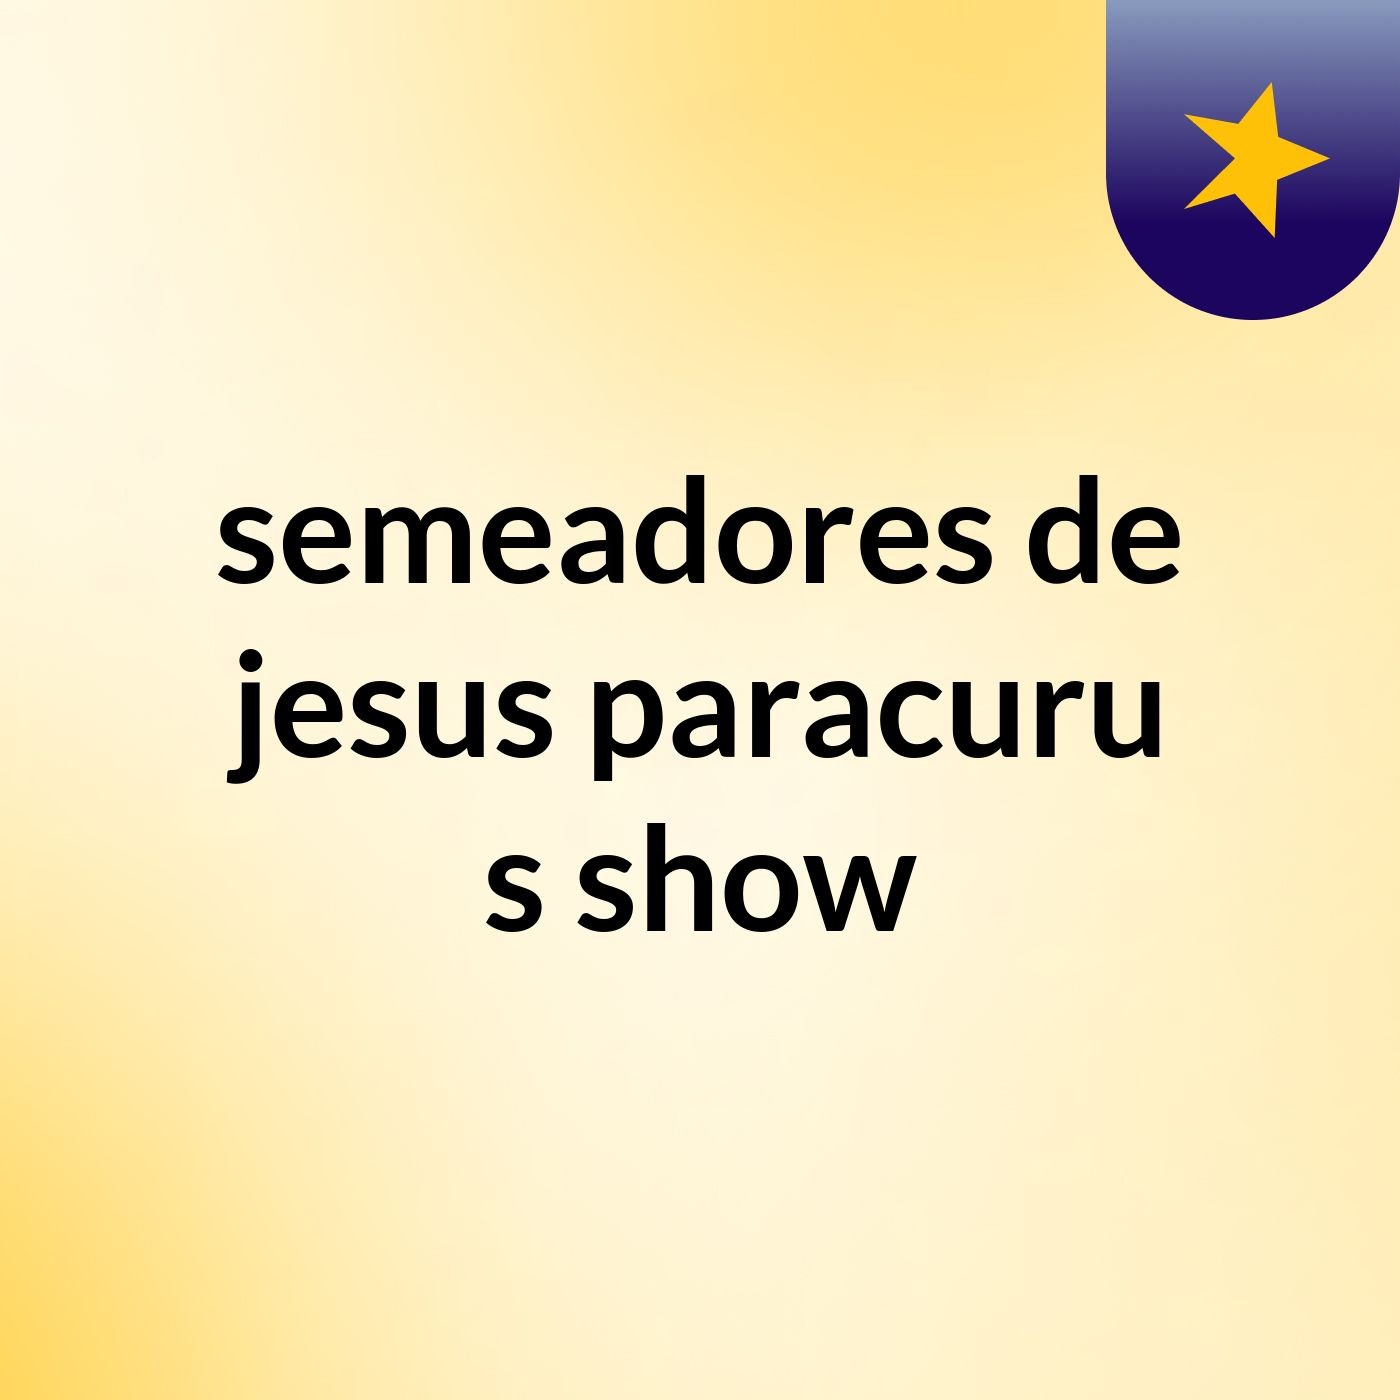 semeadores de jesus paracuru's show